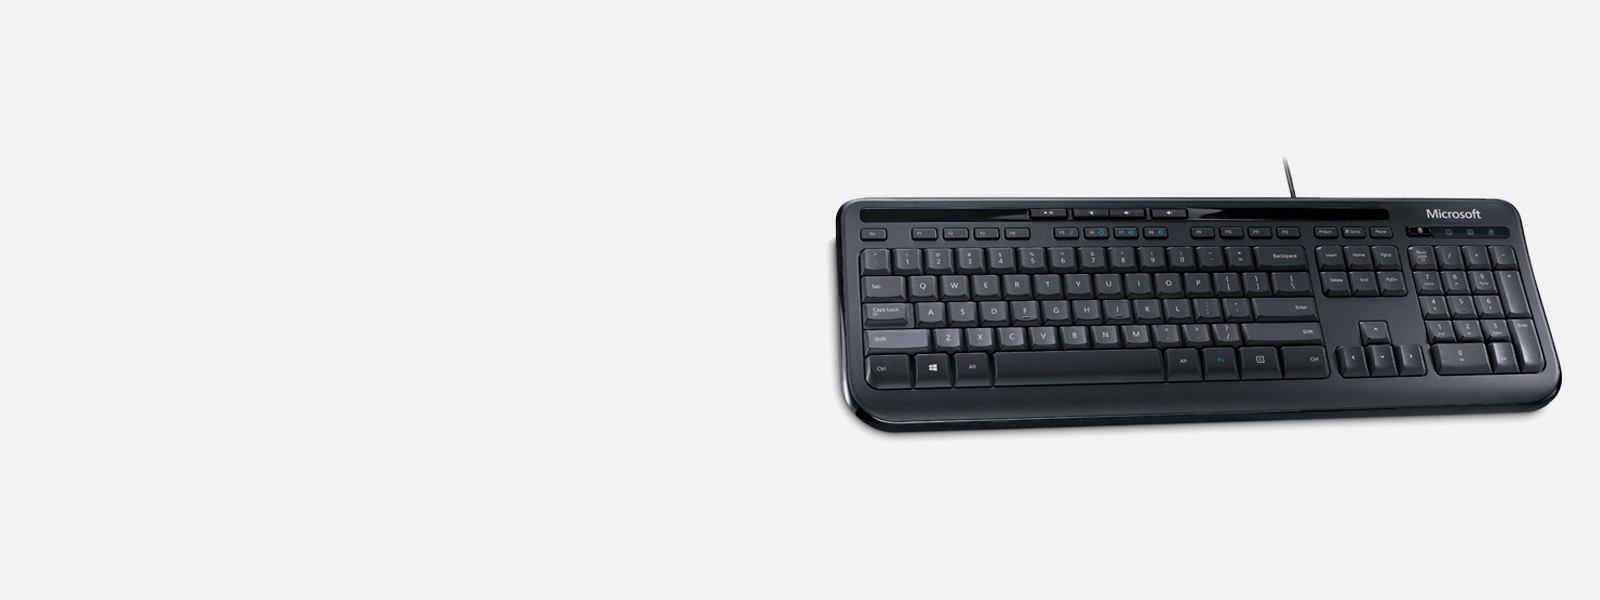 Microsoft Wired Keyboard 600